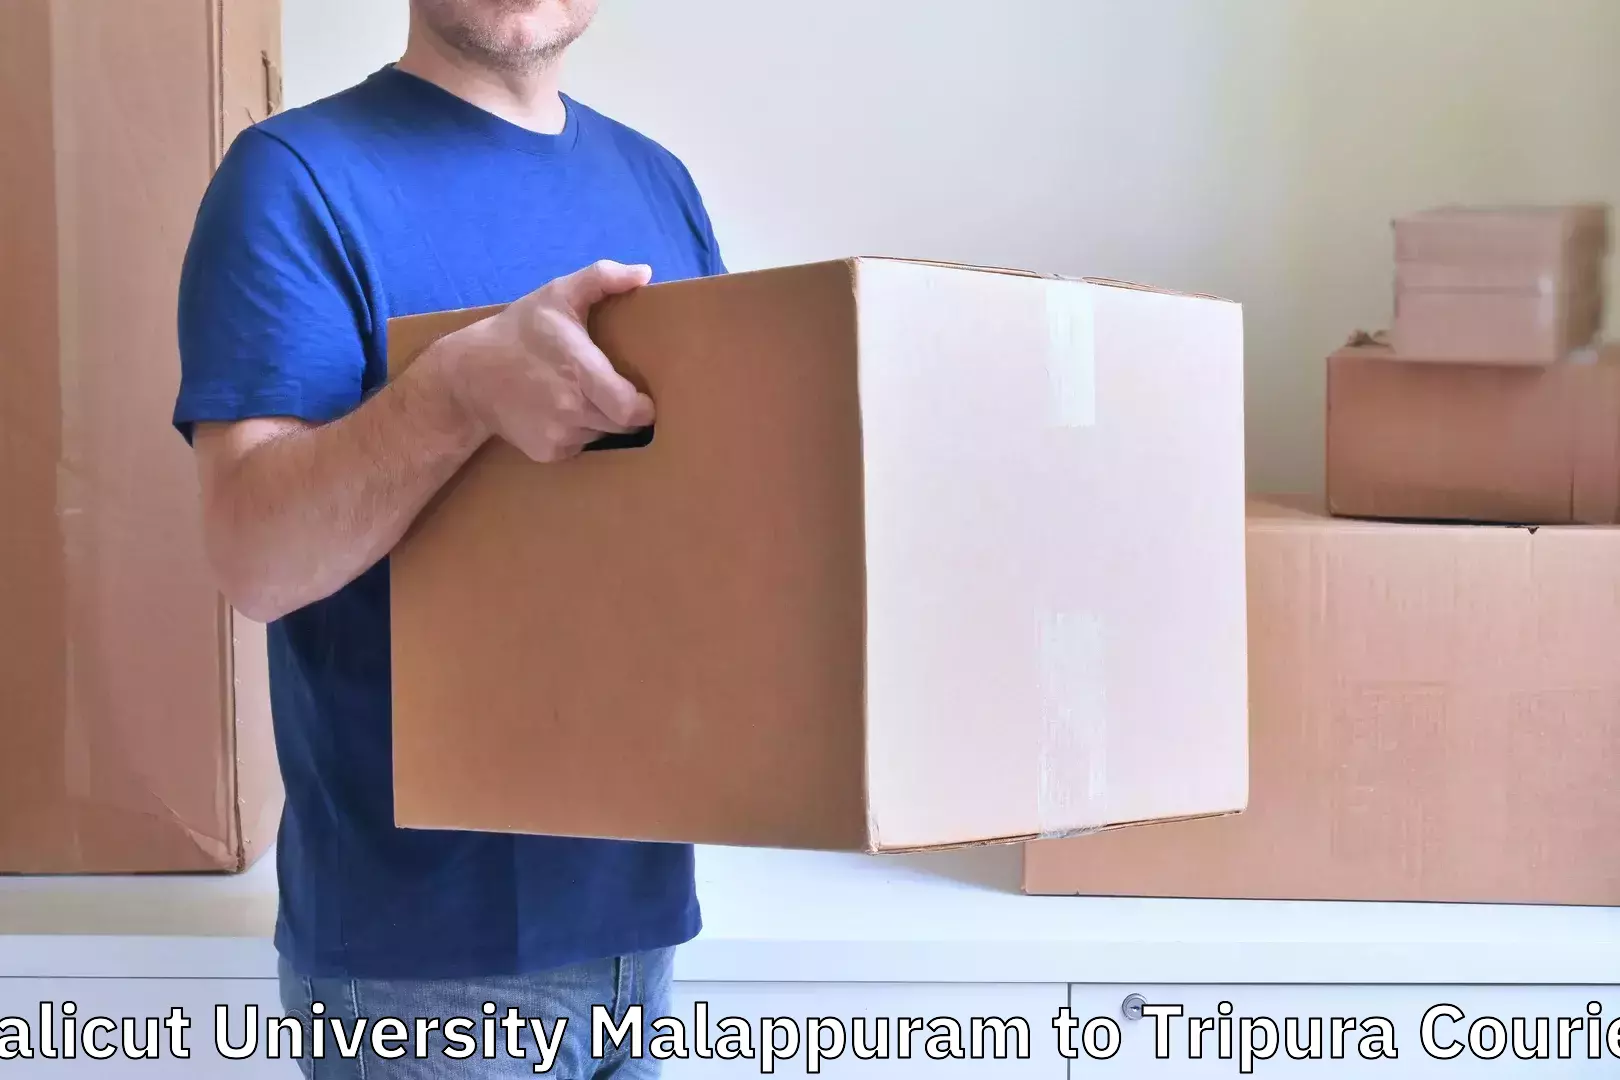 Urgent luggage shipment Calicut University Malappuram to Kailashahar